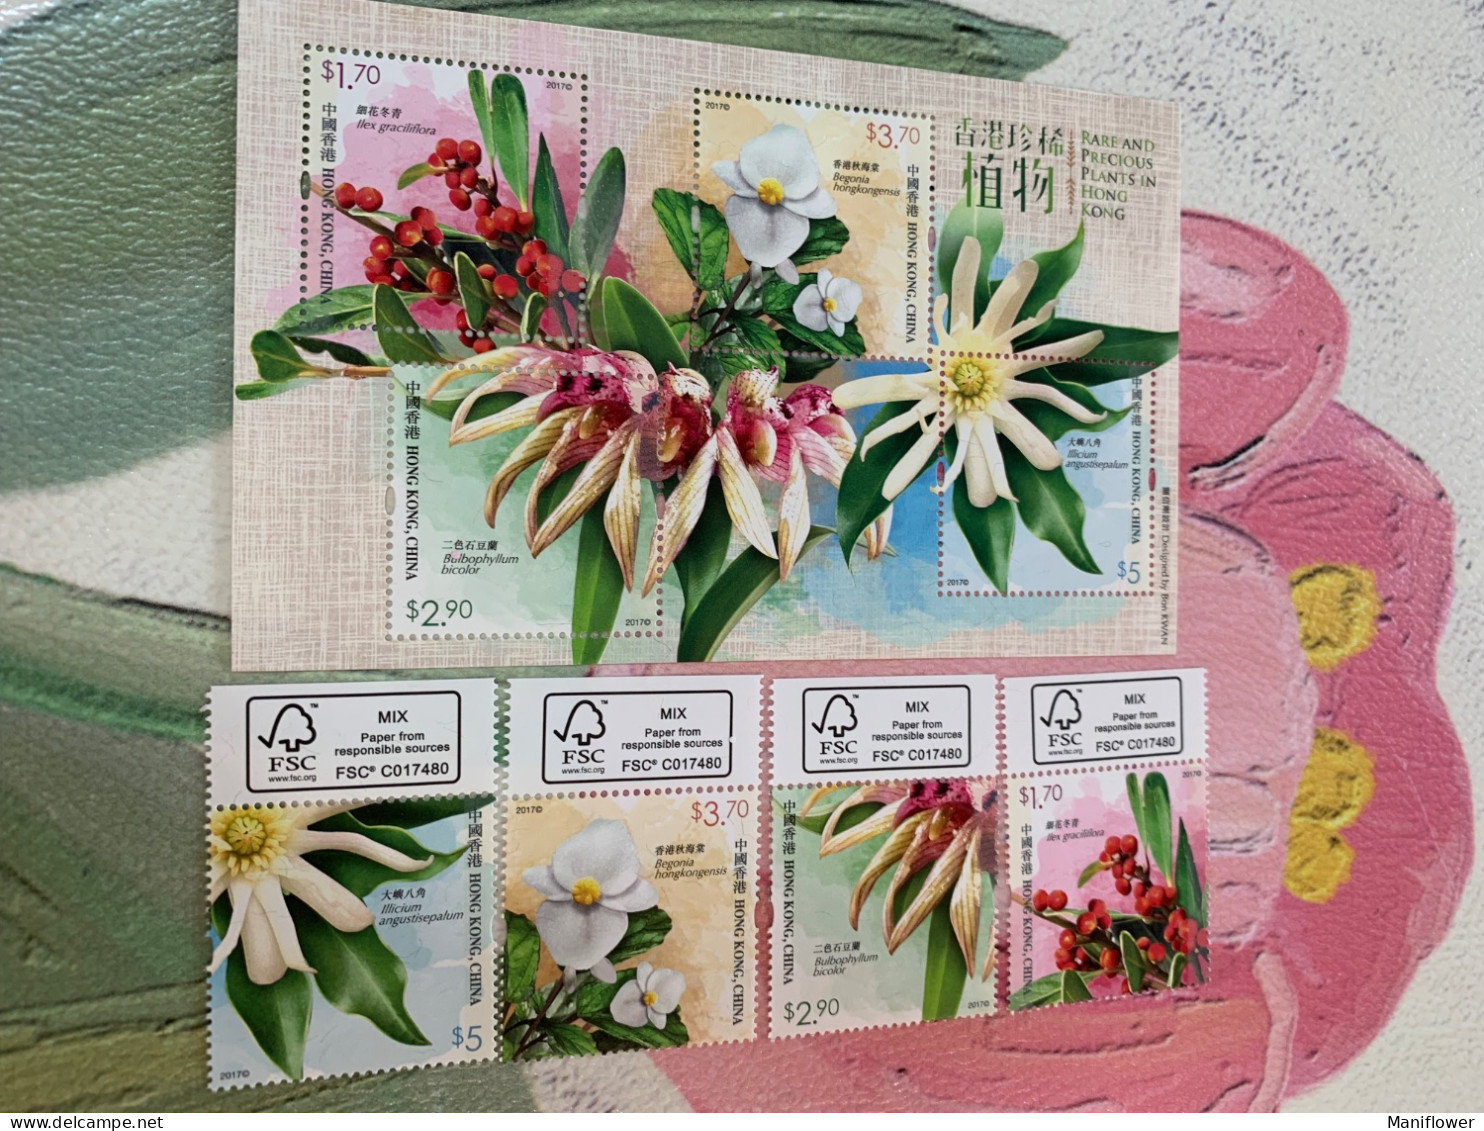 Hong Kong Stamp 2017 Rare And Precious Plants MNH - New Year